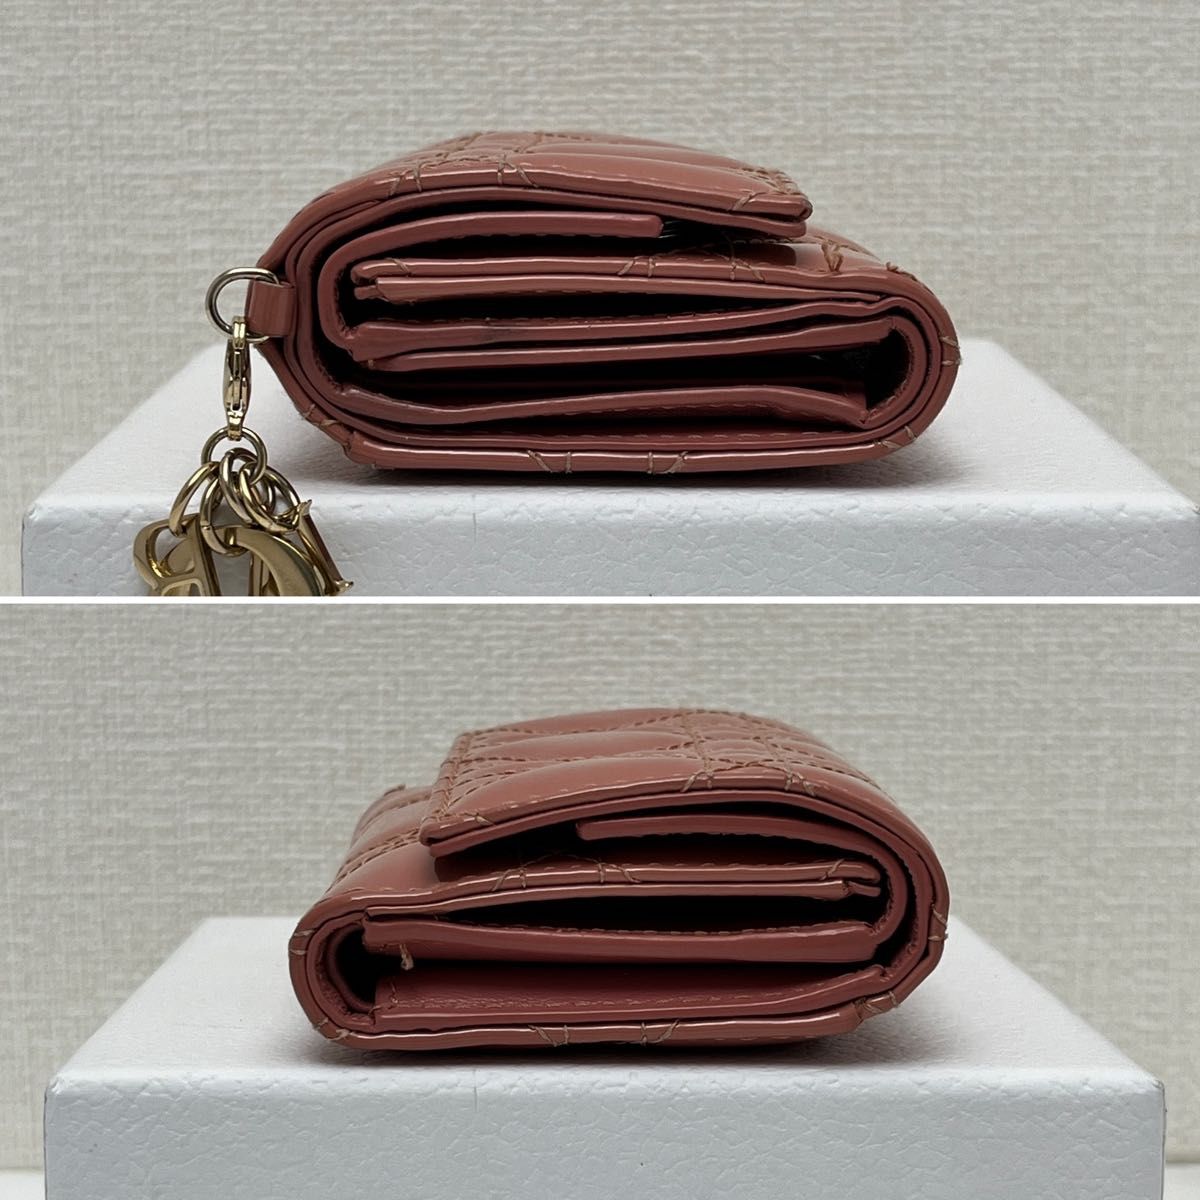 レディ ディオール ロータスウォレット(日本限定) 財布 ピンク 現行販売品